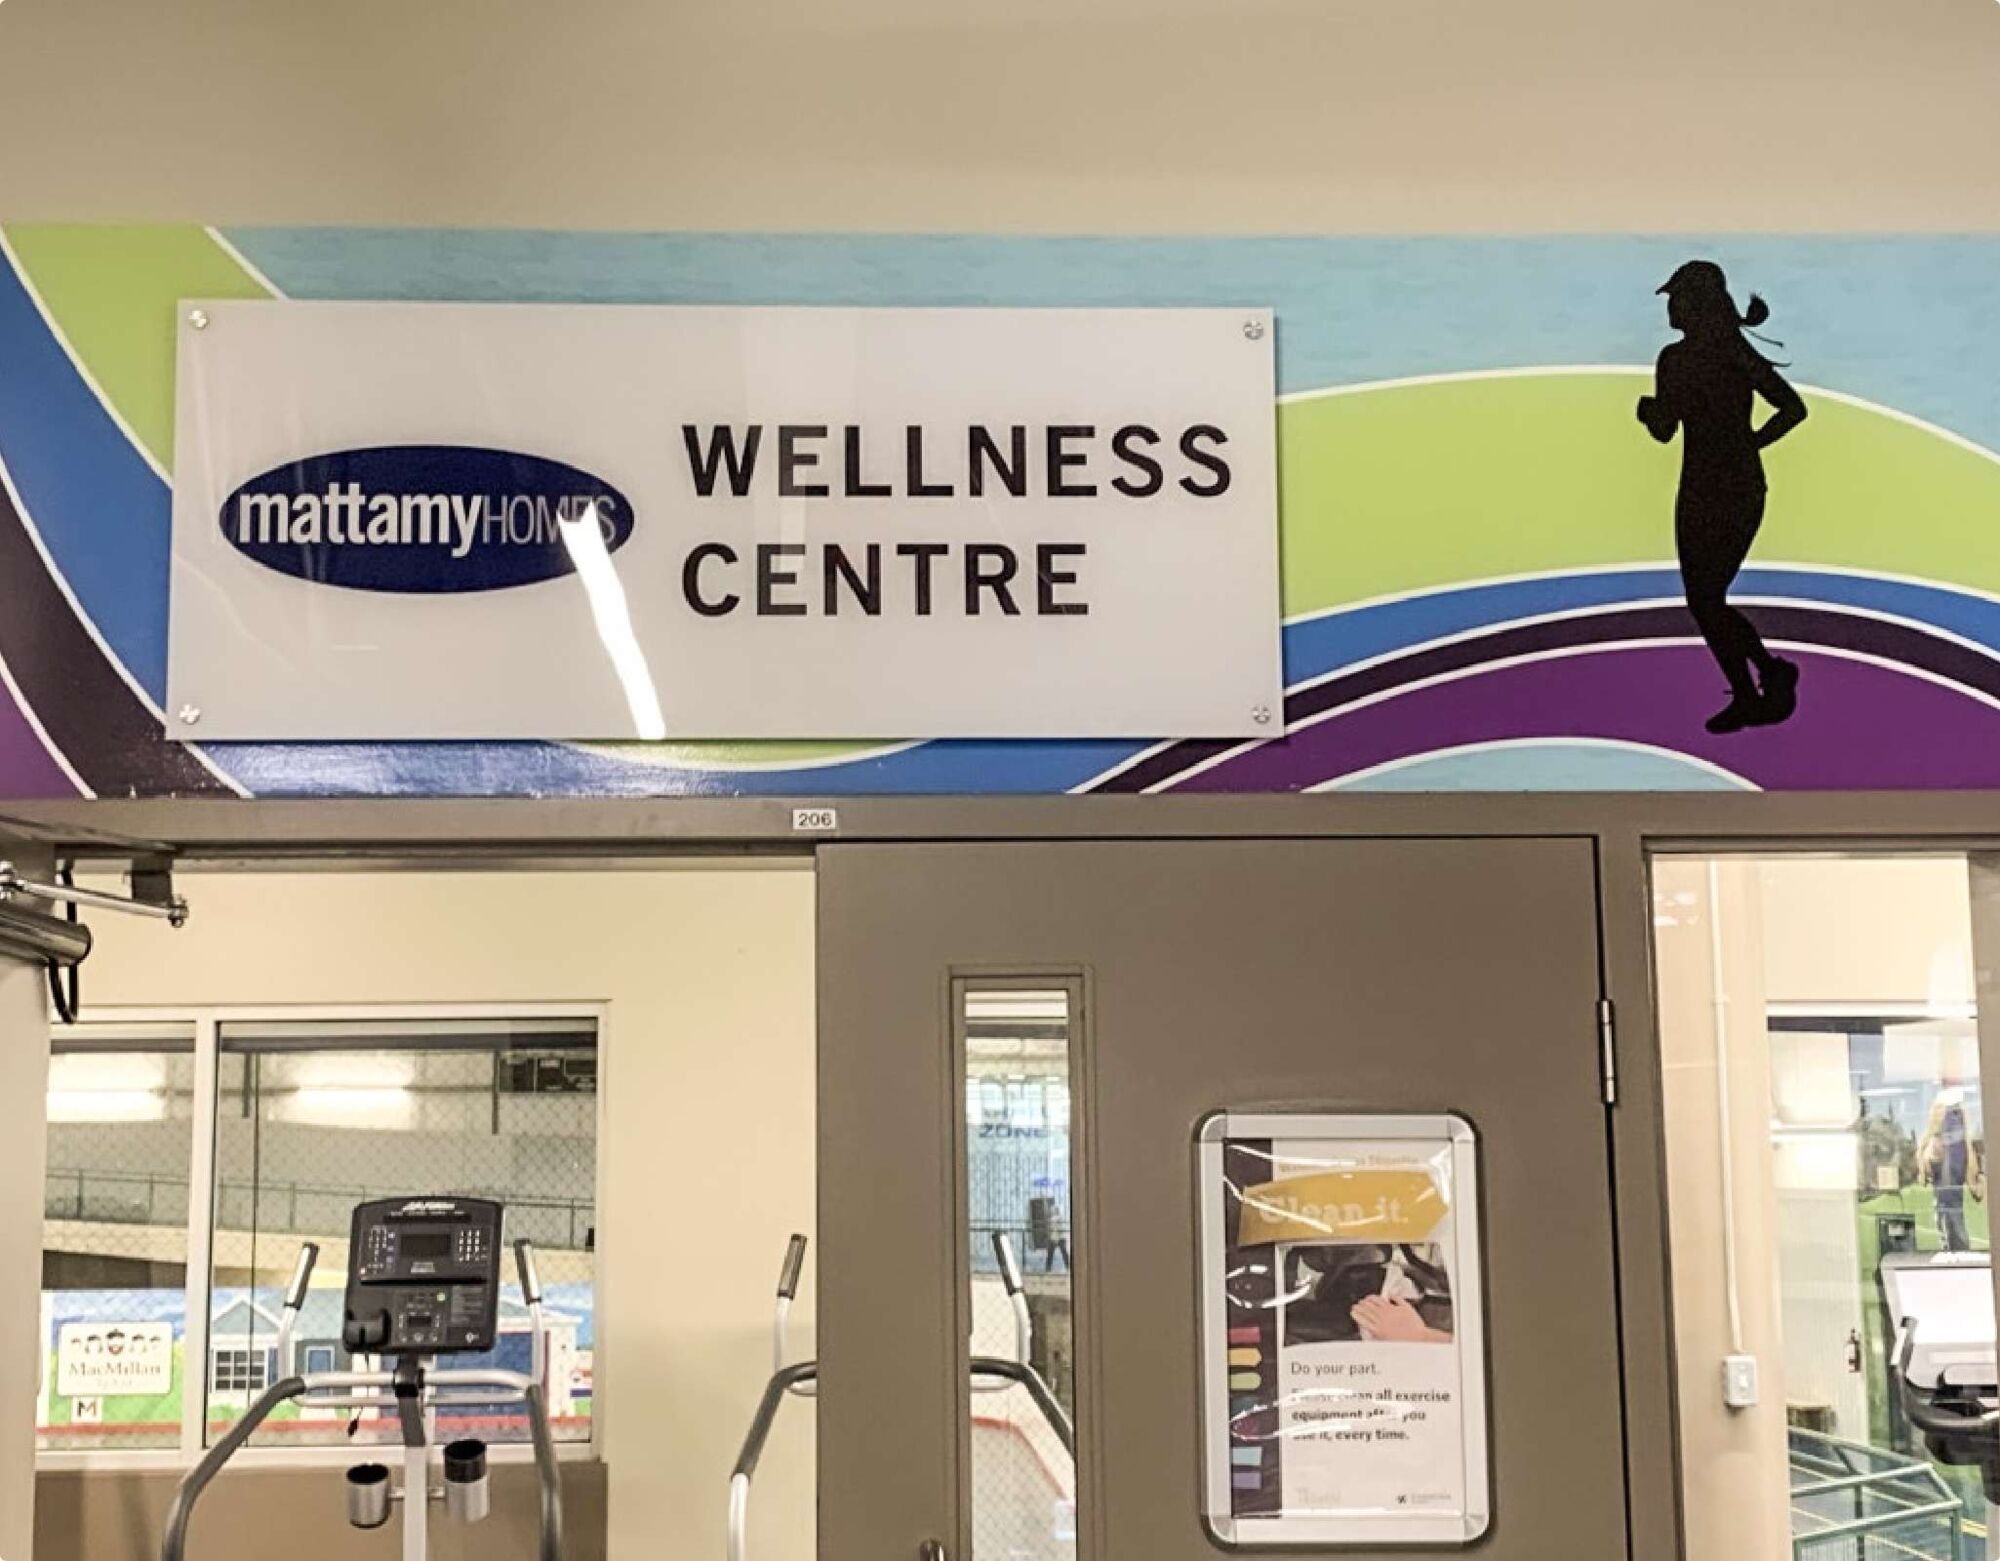 Interior image of the Mattamy Homes Wellness Centre